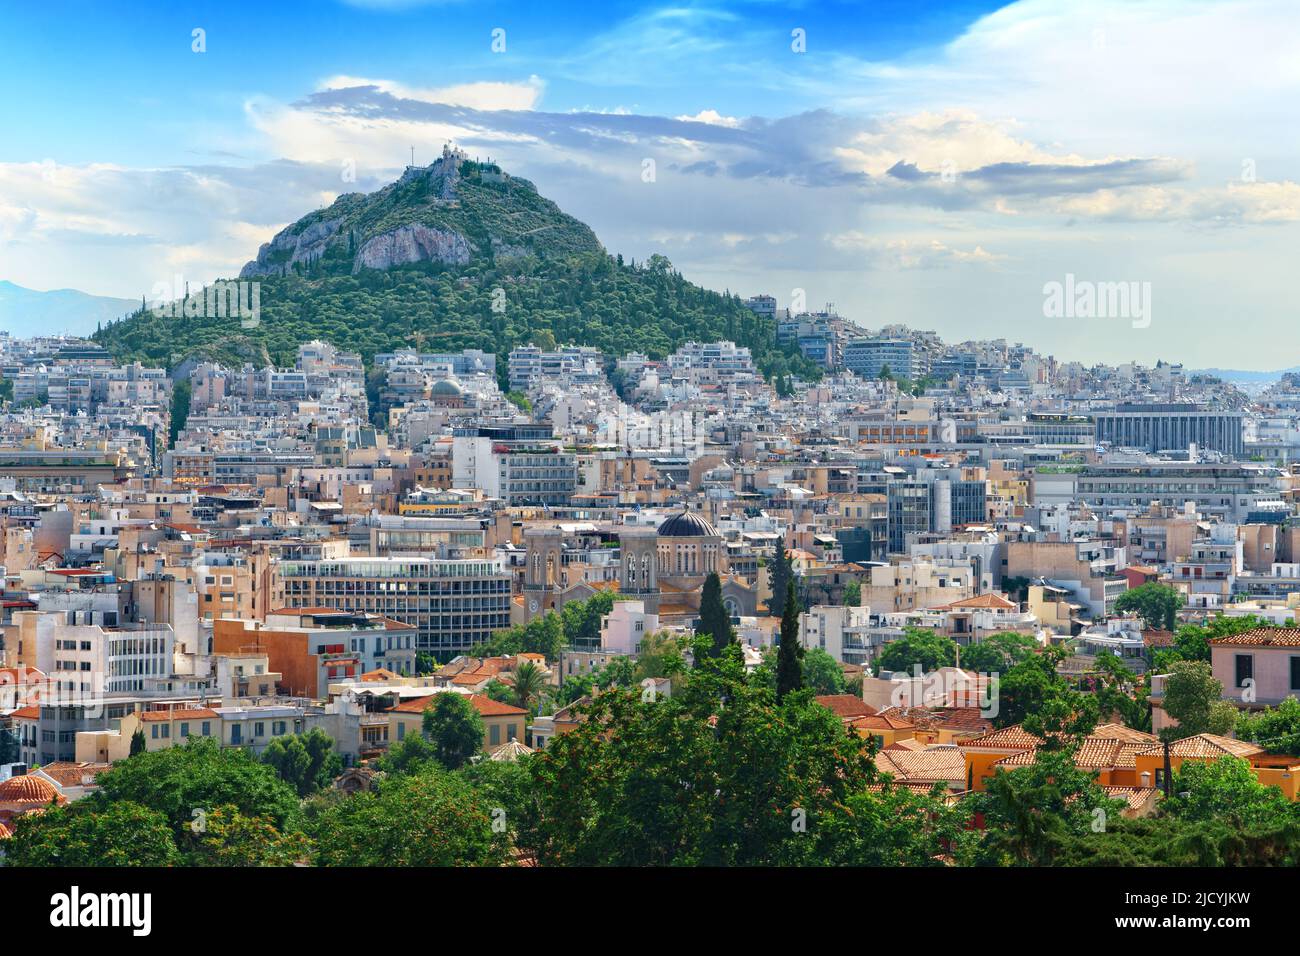 Bellissimo paesaggio urbano della capitale greca - Atene città sullo sfondo del Monte Lycabettus e cielo blu in un pomeriggio soleggiato. Lycabettus. Grecia Foto Stock